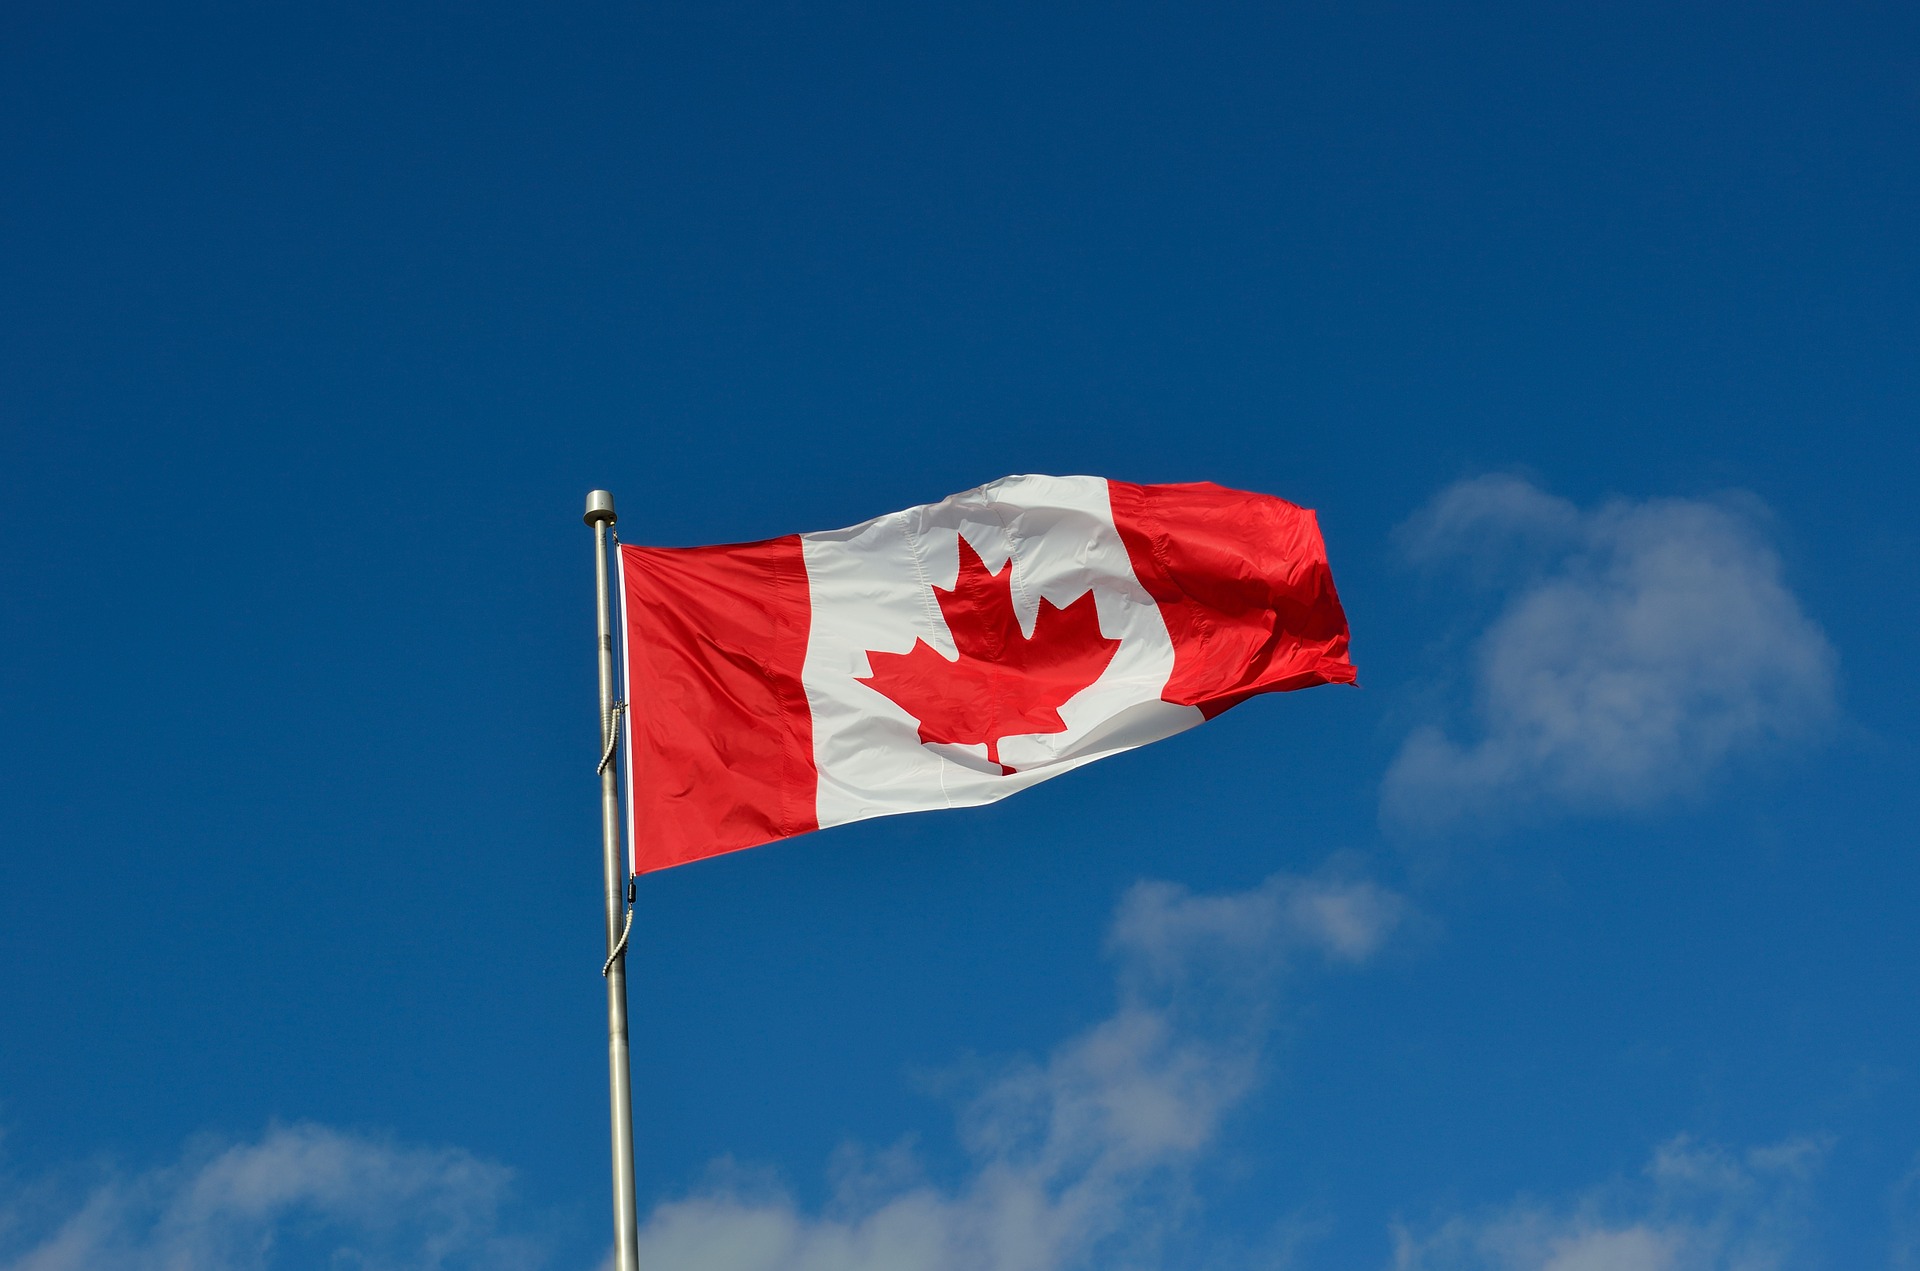 a Canadian flag against a blue sky